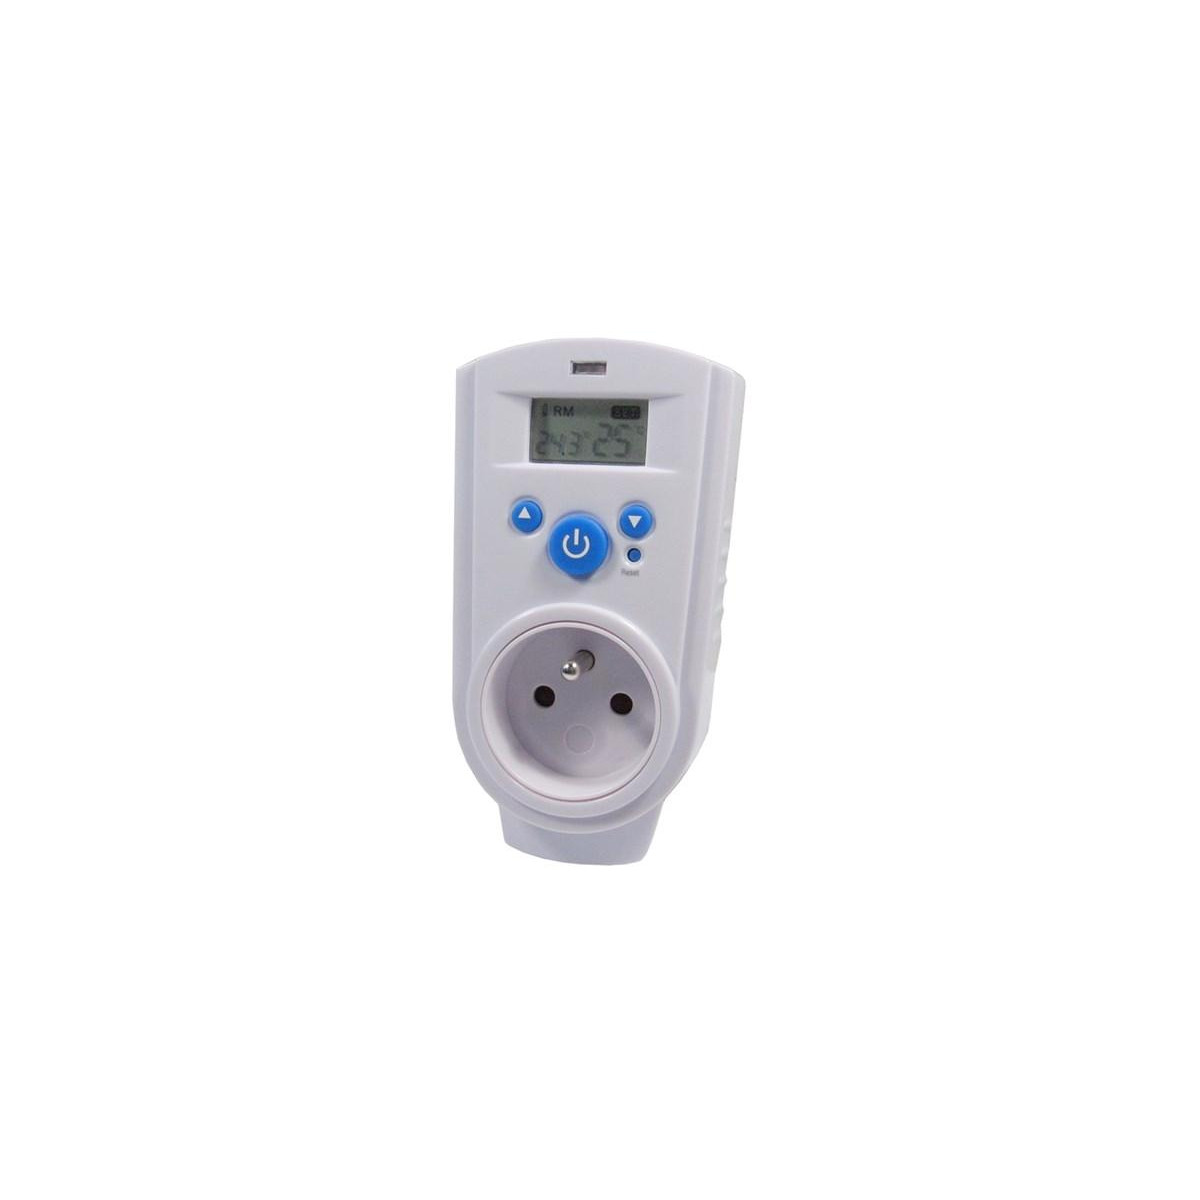 More about Zásuvkový termostat TH-928T digitální - Nejlepší cena a dostupnost - Vaše ideální řešení pro regulaci teploty